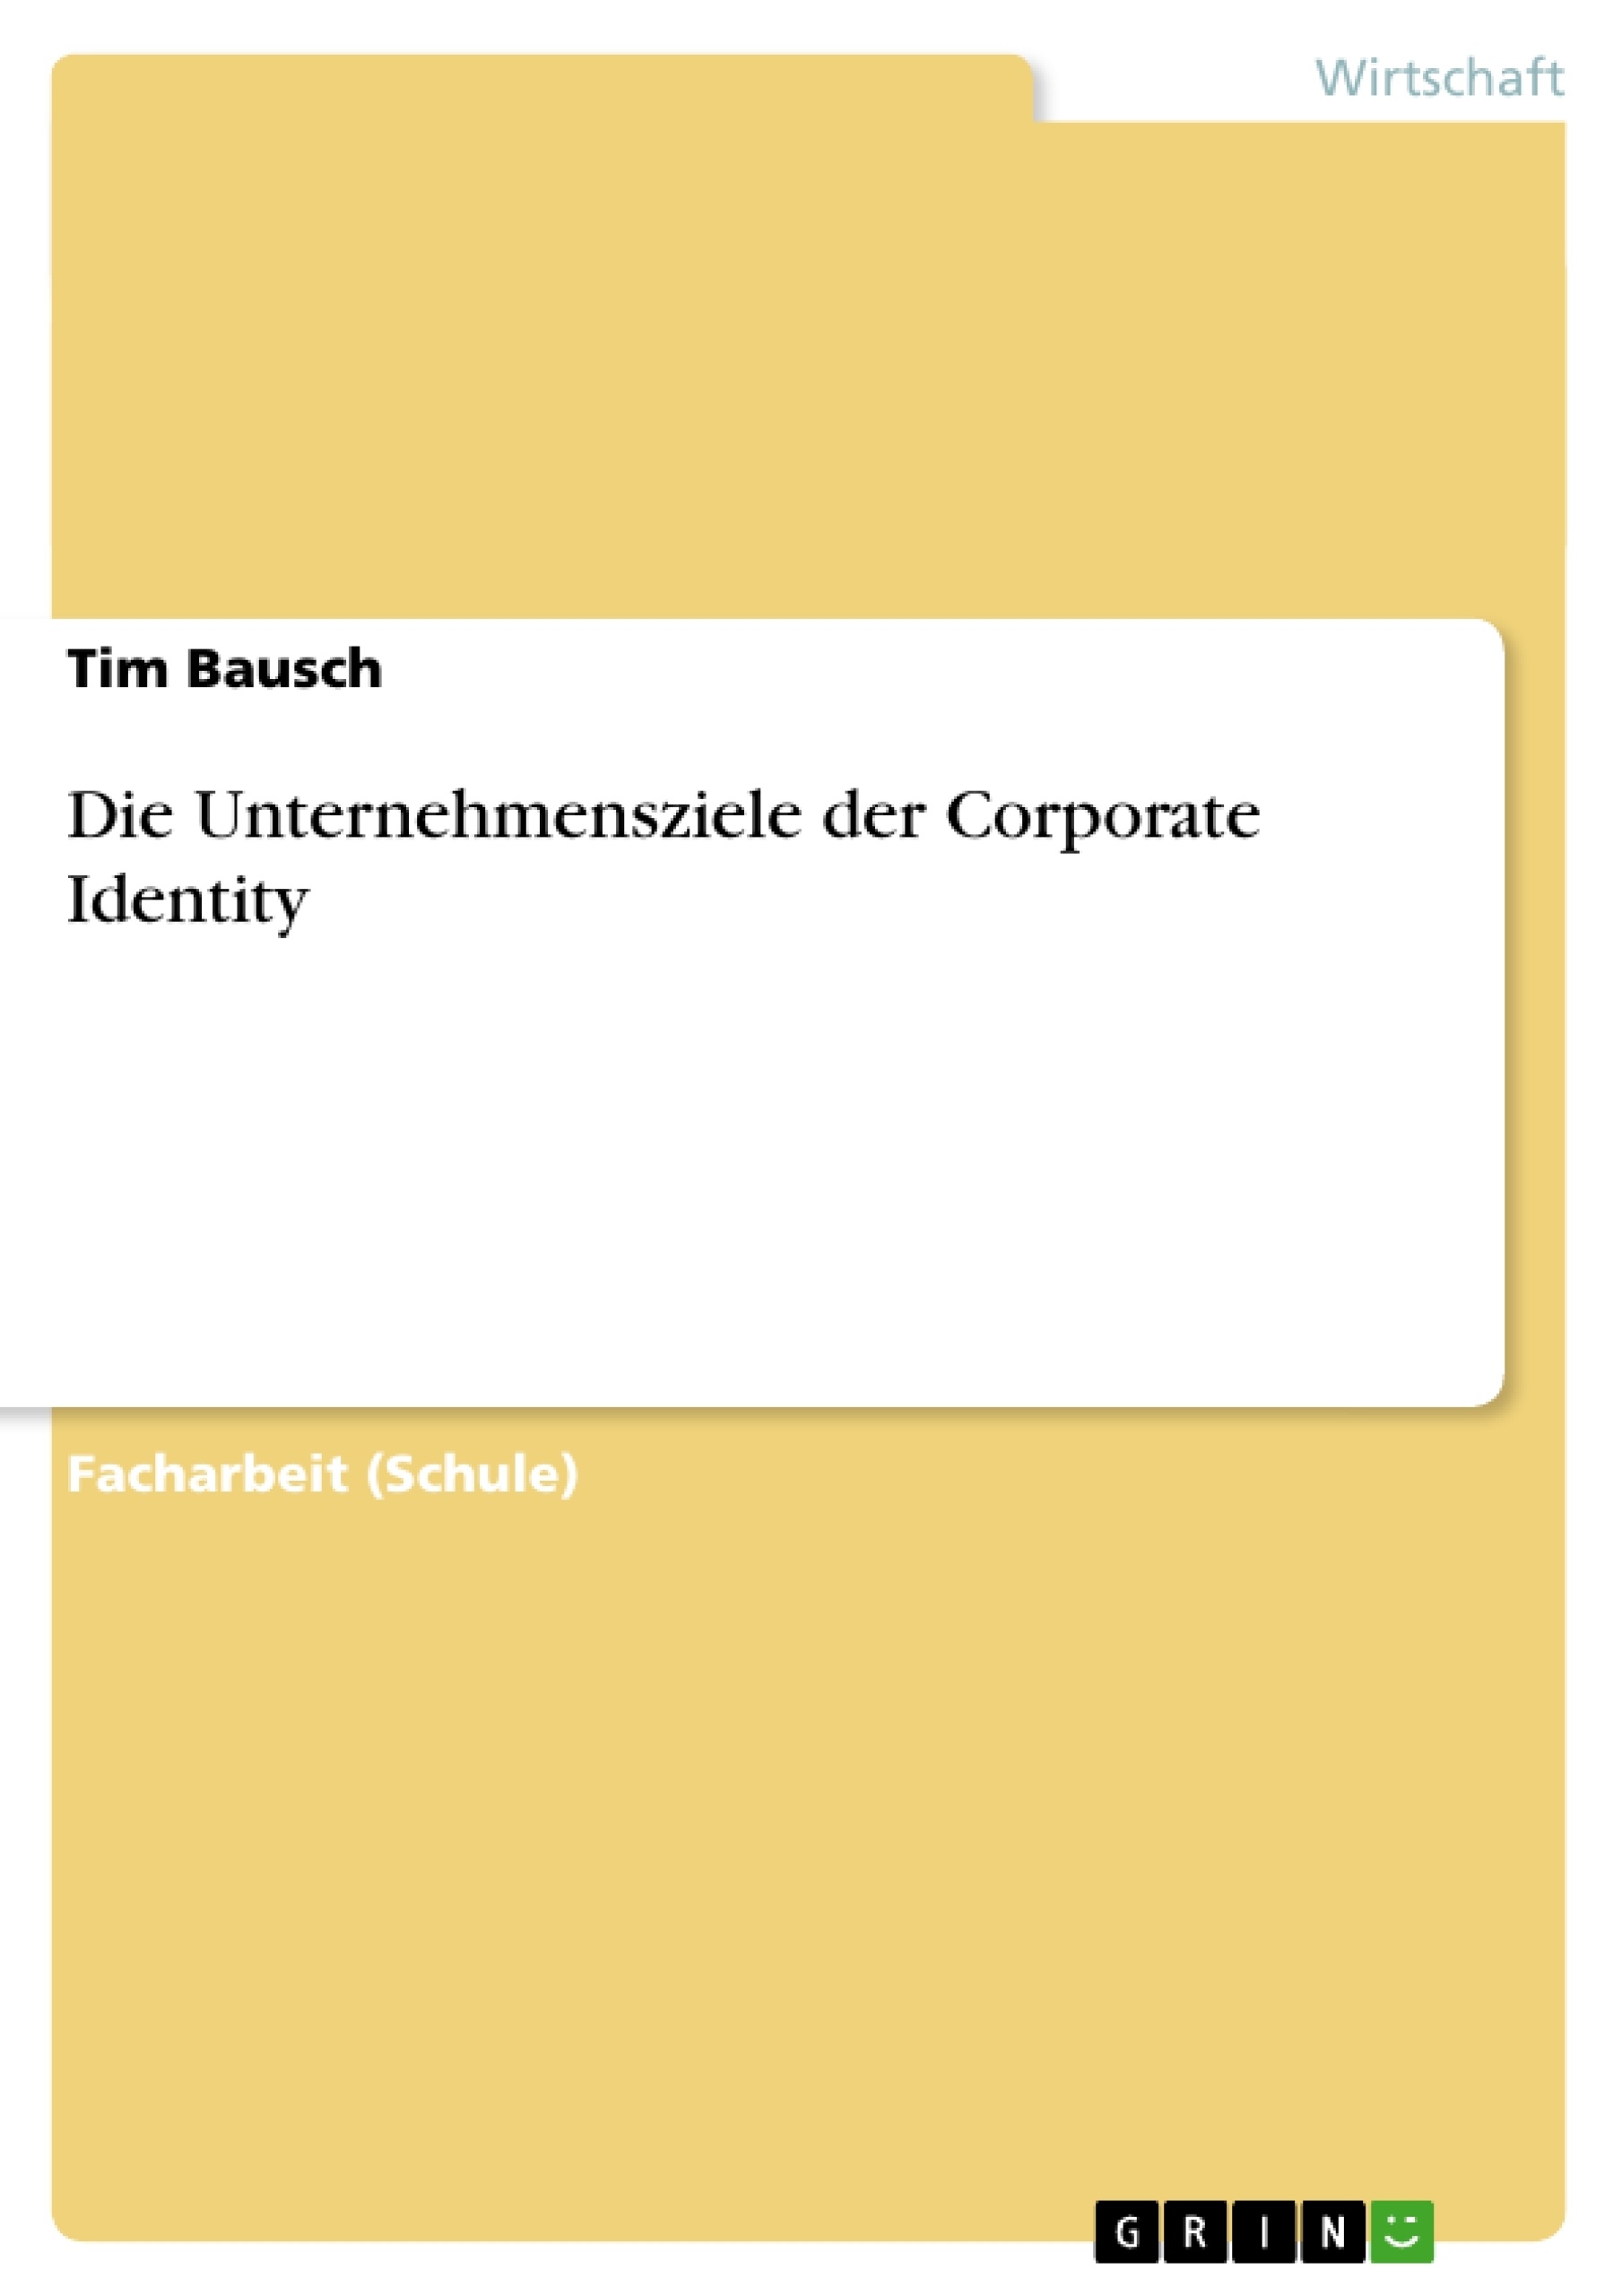 Title:  Die Unternehmensziele der Corporate Identity 